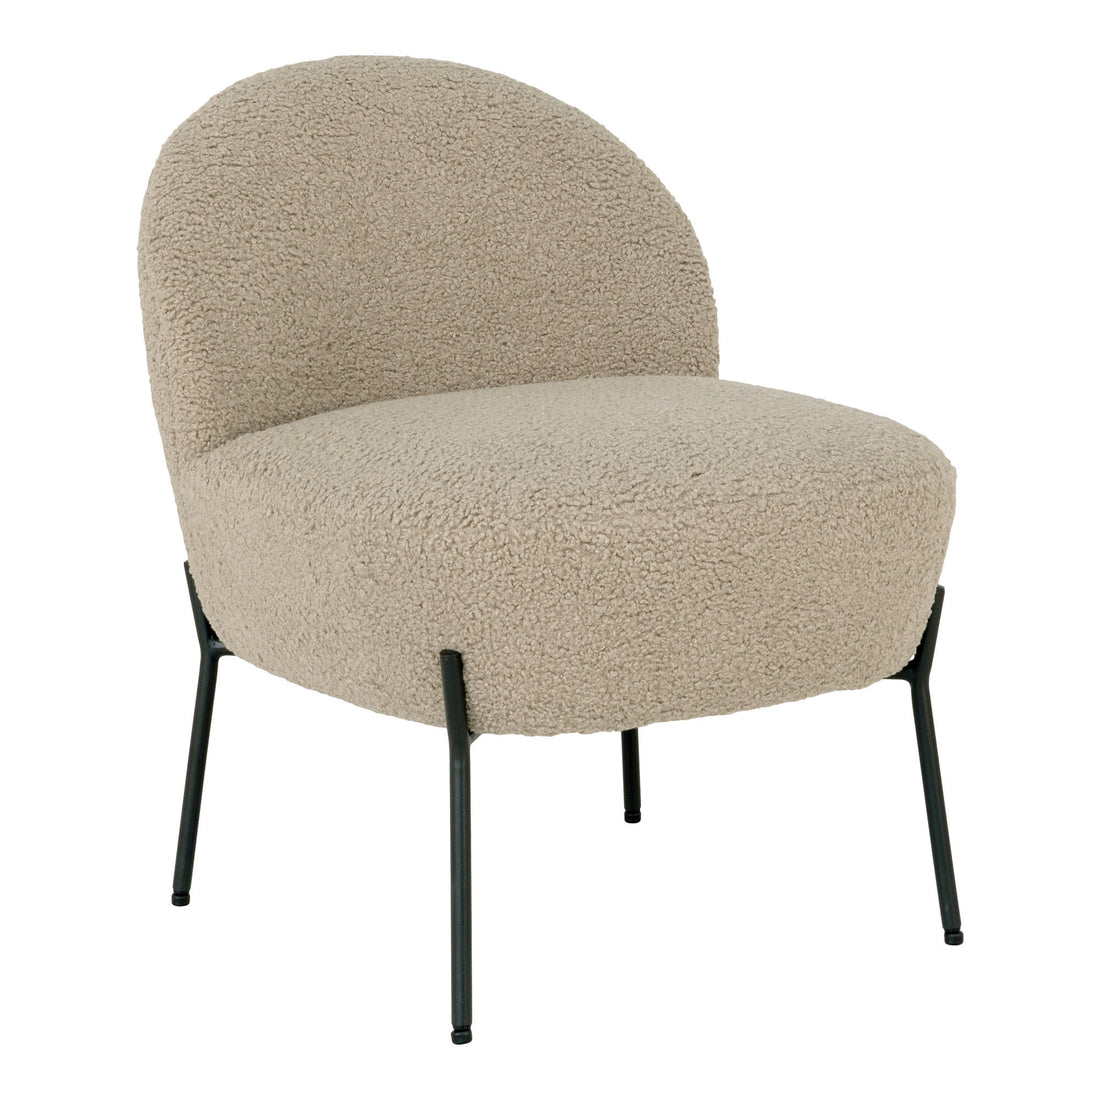 Merida -Sessel - Sessel in grau -Brown -künstlichen Lämmern mit schwarzen Beinen - 1 - PCs